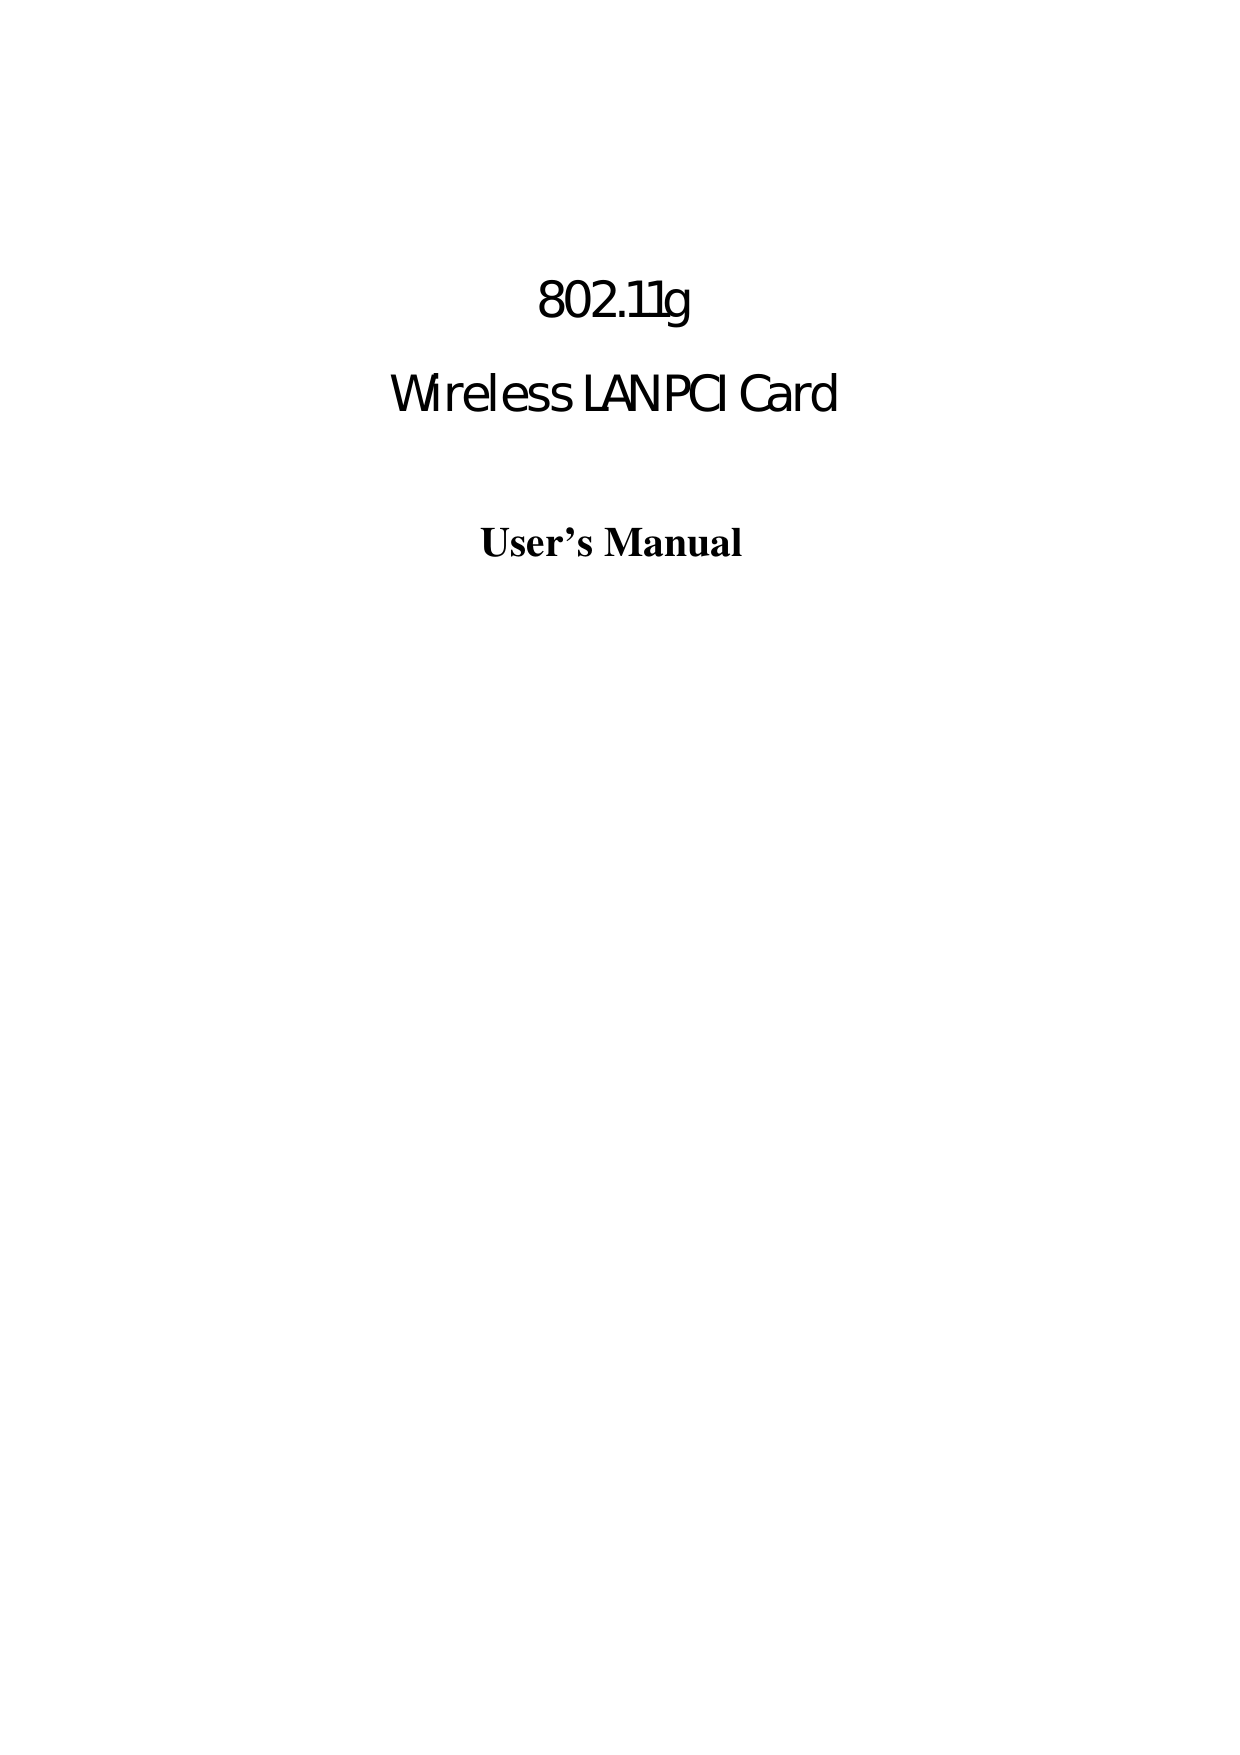     802.11g  Wireless LAN PCI Card  User’s Manual 